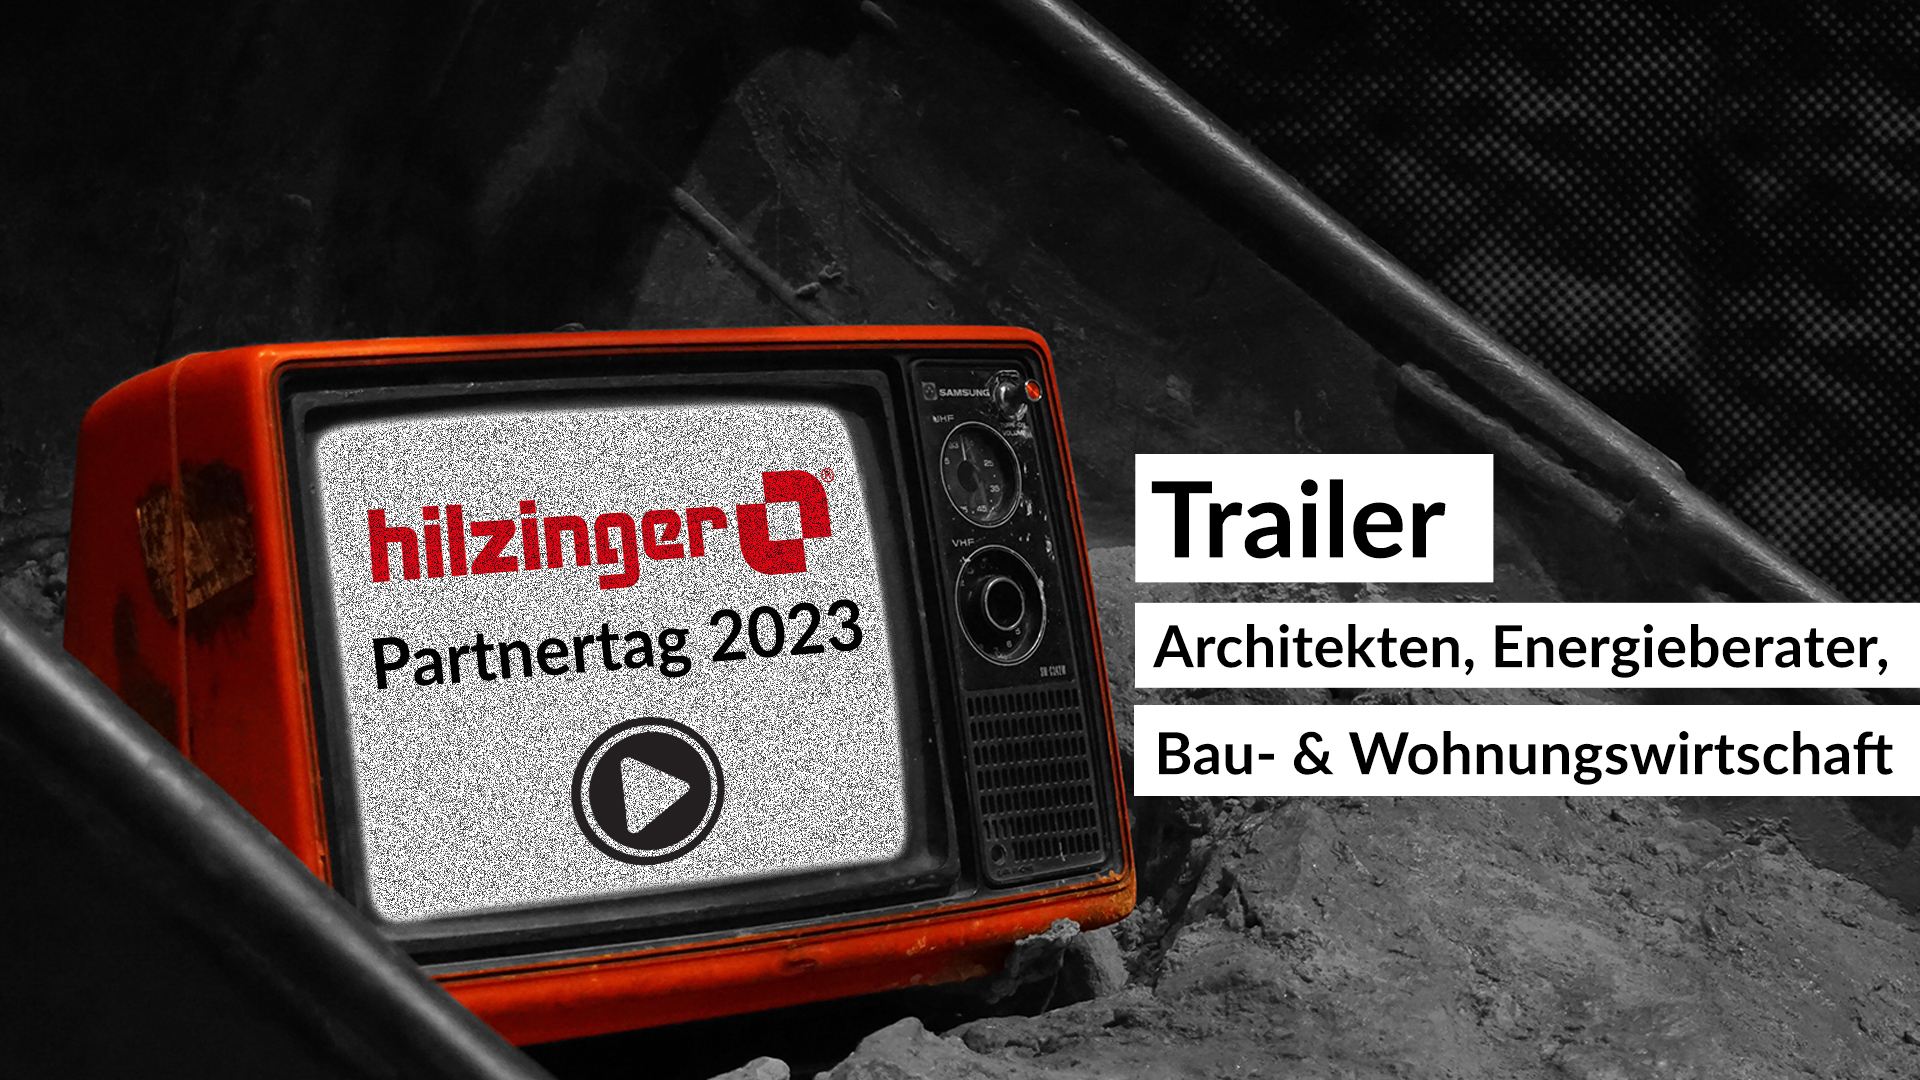 Trailer für hilzinger Partnertag 2023 für Architekten, Planer usw.